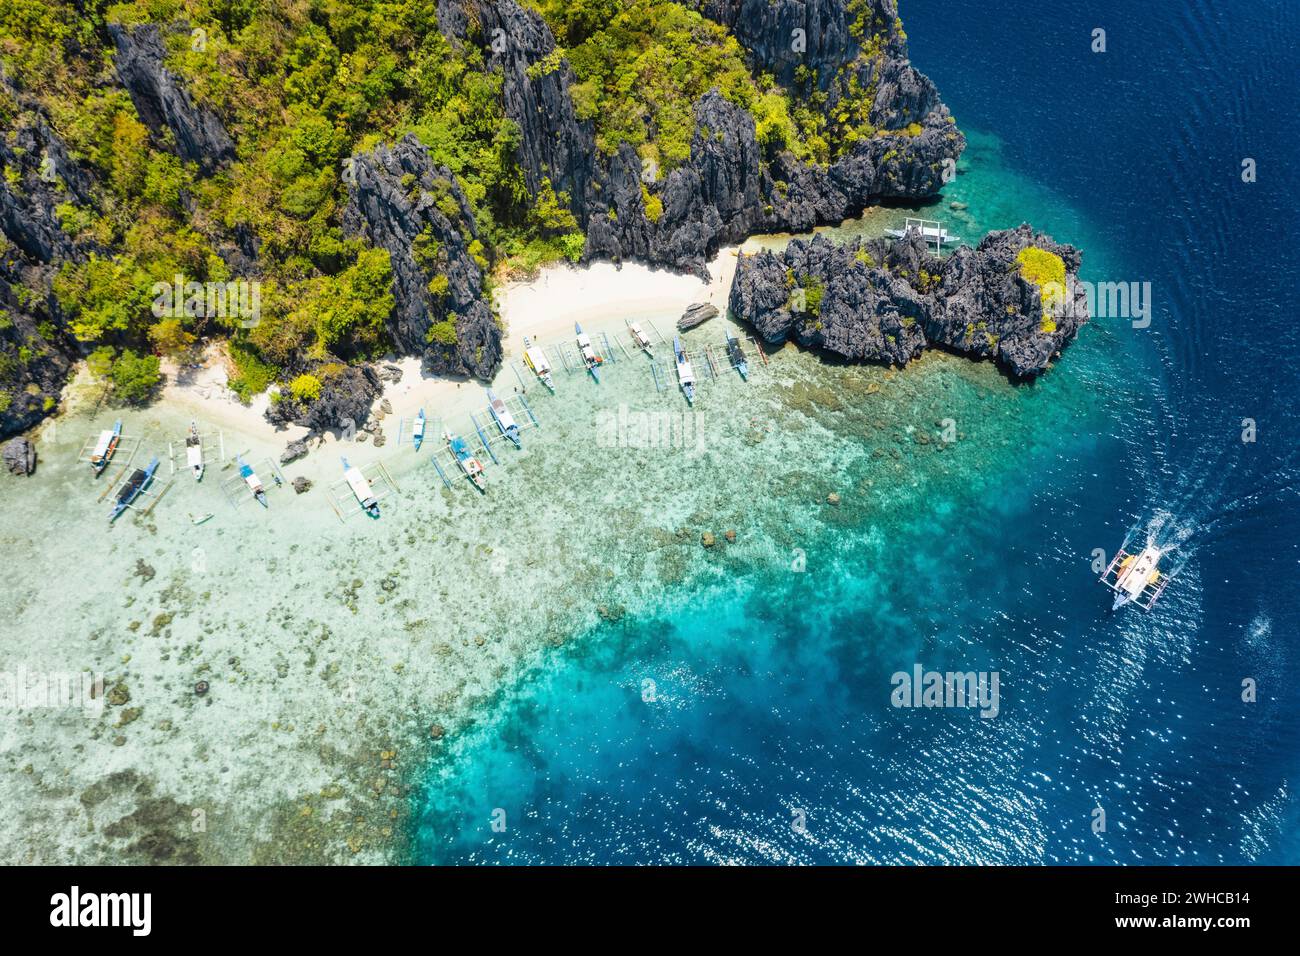 Vista aerea delle barche turistiche ormeggiate nell'isola tropicale di Shimizu. Rocce costiere calcaree, spiaggia di sabbia bianca in acqua blu. El Nido, Palawan, Filippine. Foto Stock